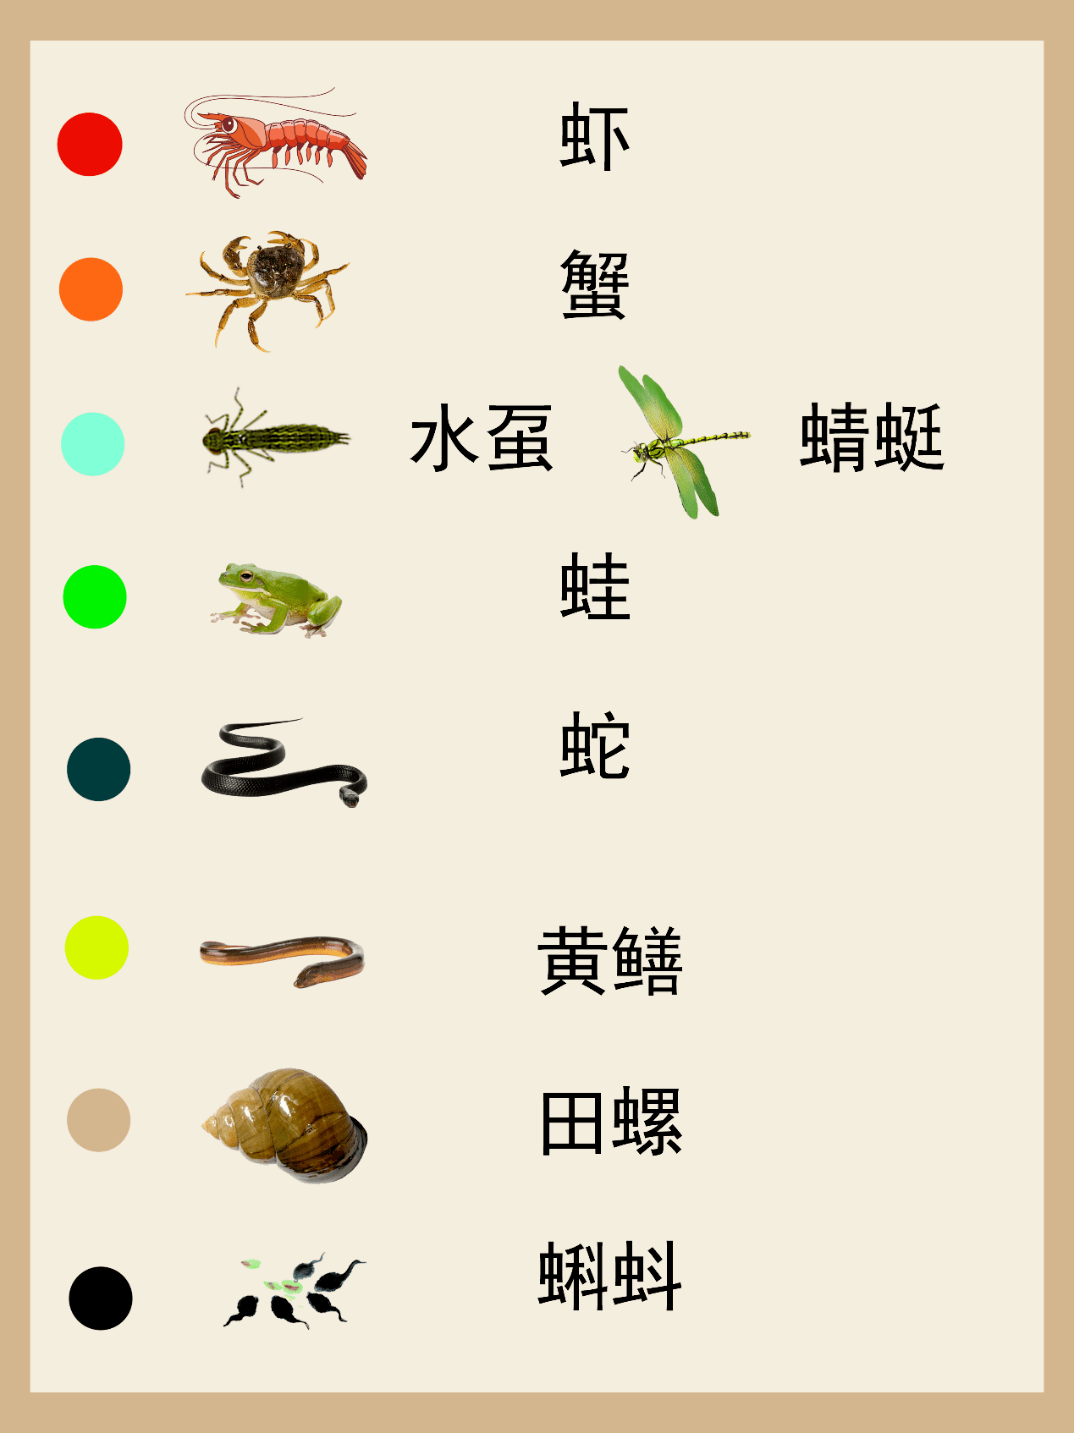 新风鳗鲞食物语资料图片